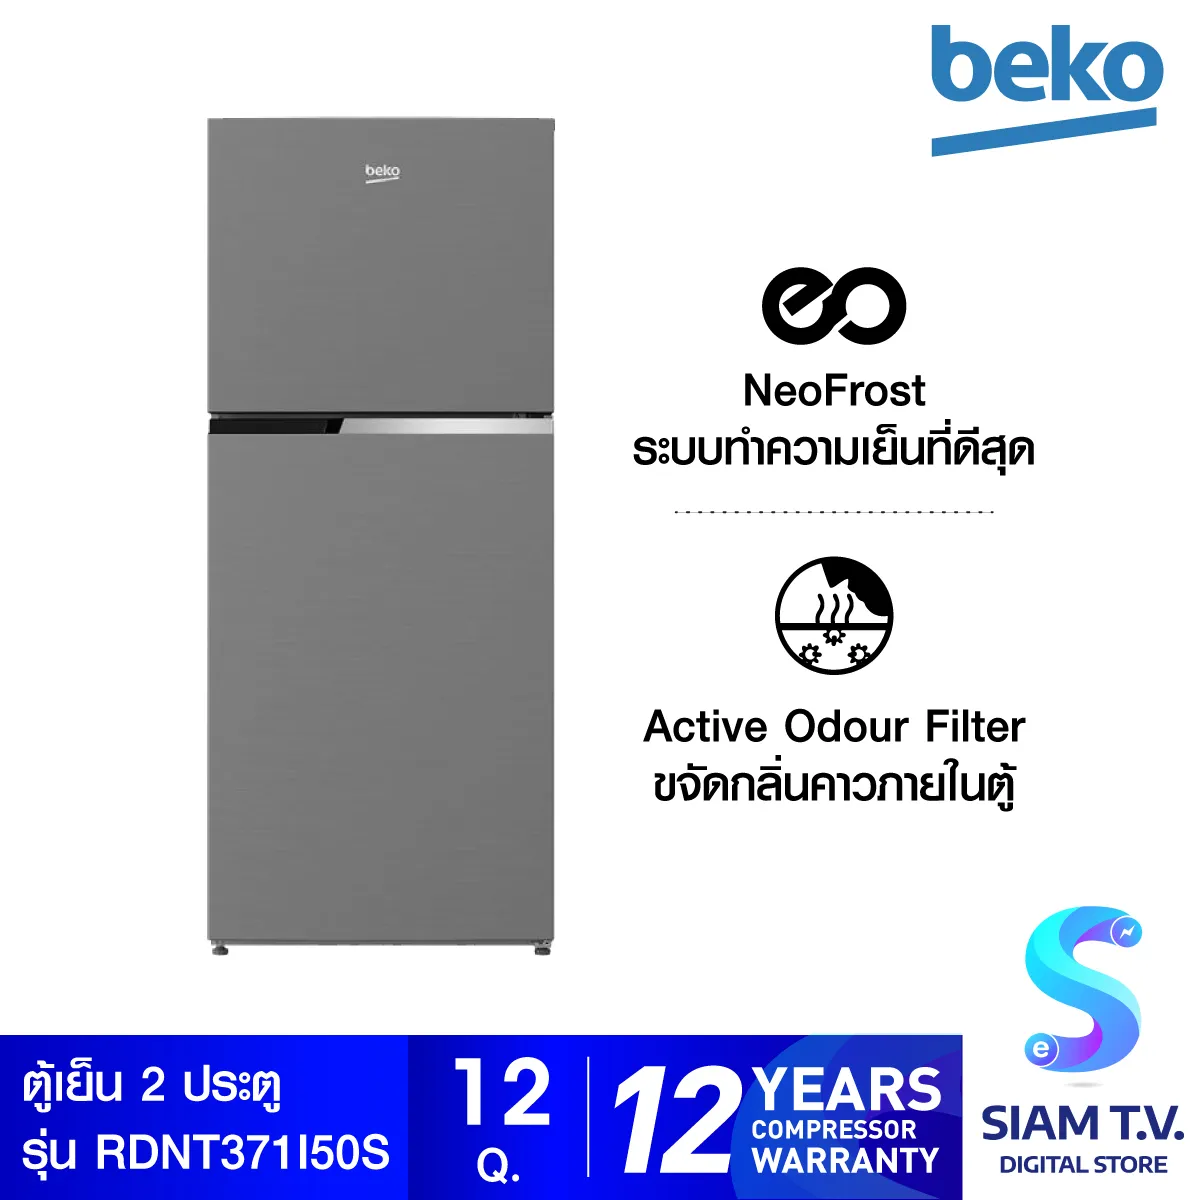 Beko RDNT371I50S 12 คิว ตู้เย็น 2 ประตู Inverter ตู้เย็น 2 ประตู โดย สยามทีวี by Siam T.V.